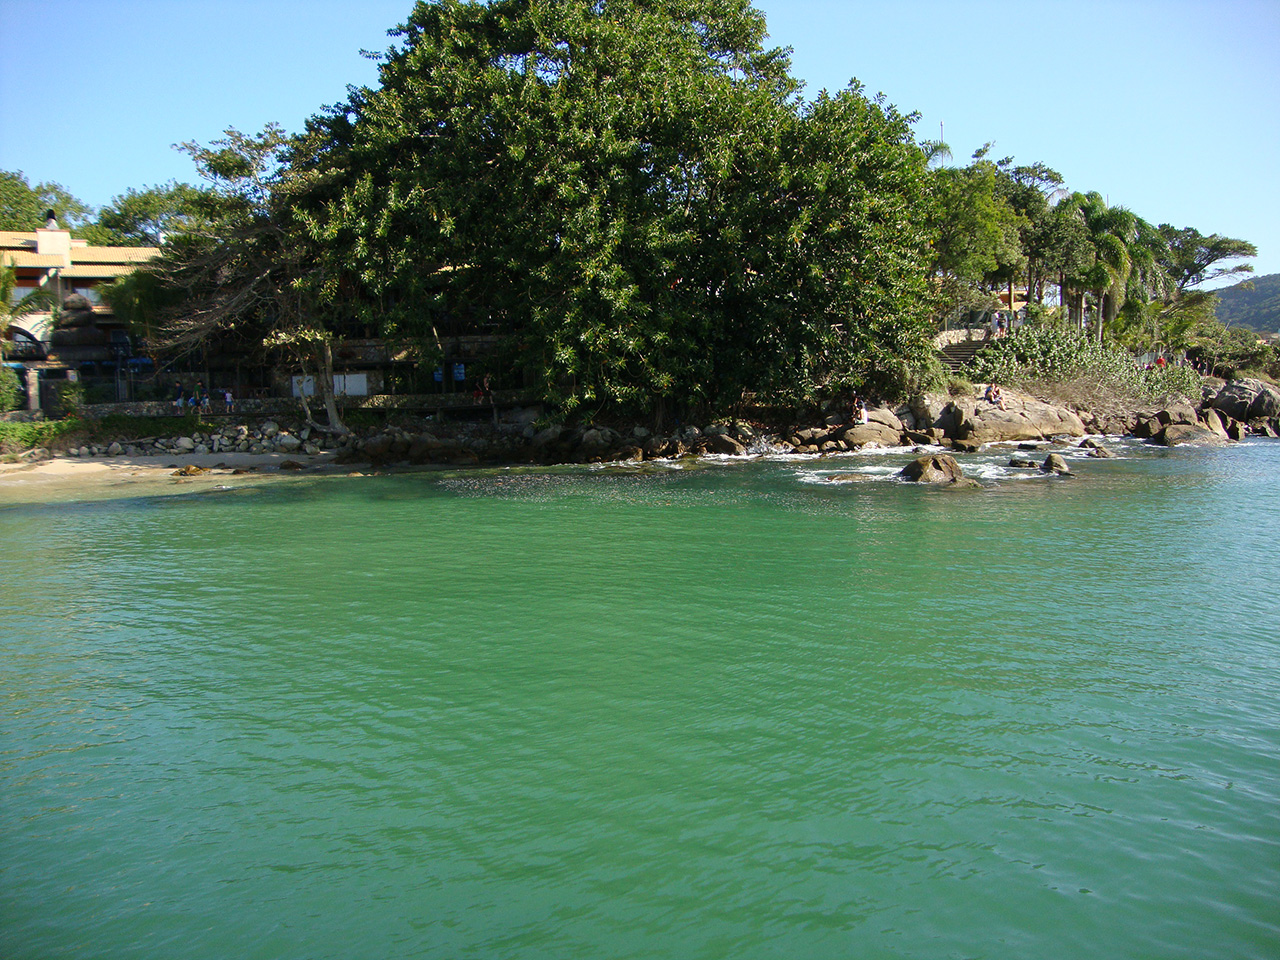 No mergulho em Bombinhas você vai encontrar mar da cor verde esmeralda